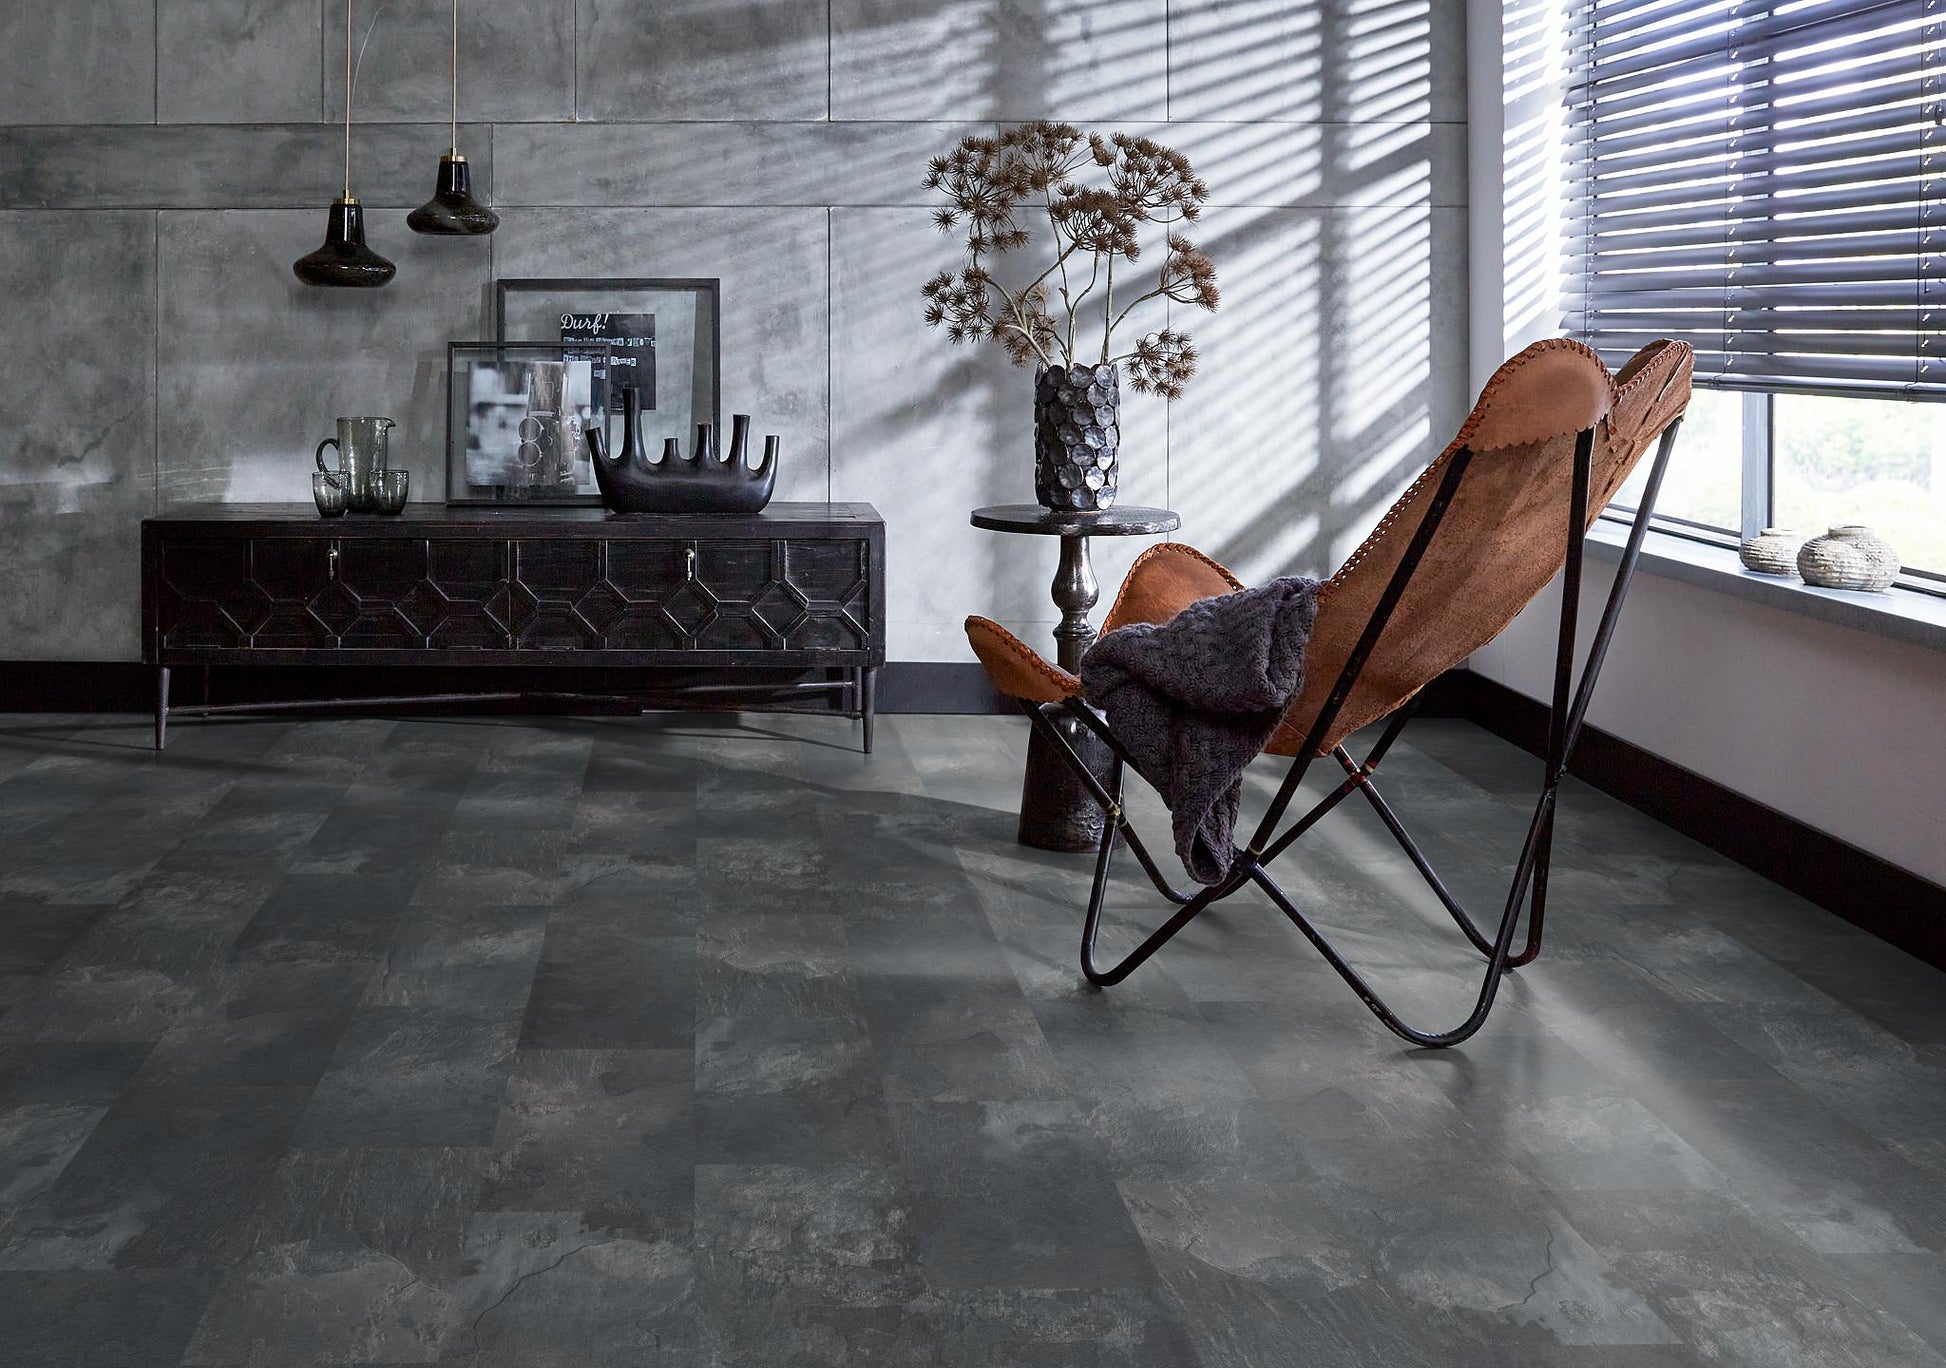 Floorlife Carrelage stratifié Madison Square Aqua Dark Grey 6394 - Aspect pierre naturelle 60.4 x 28 cm